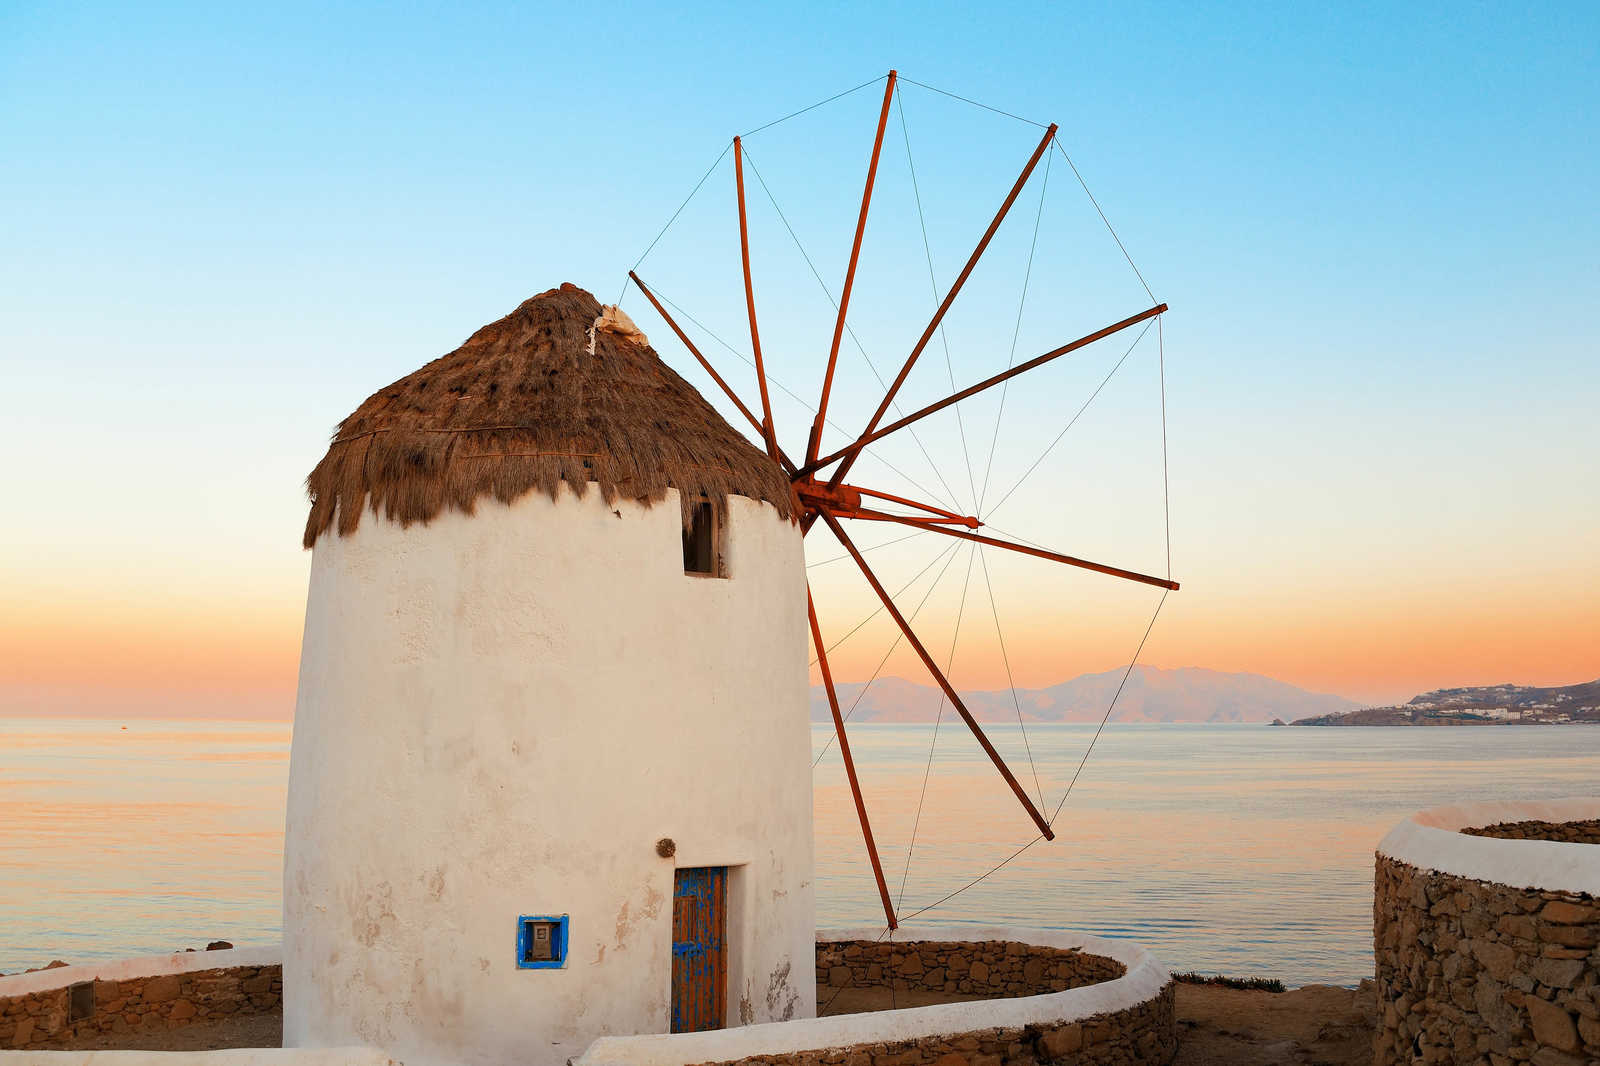             Cuadro en lienzo Molino de viento griego en la costa - 0,90 m x 0,60 m
        